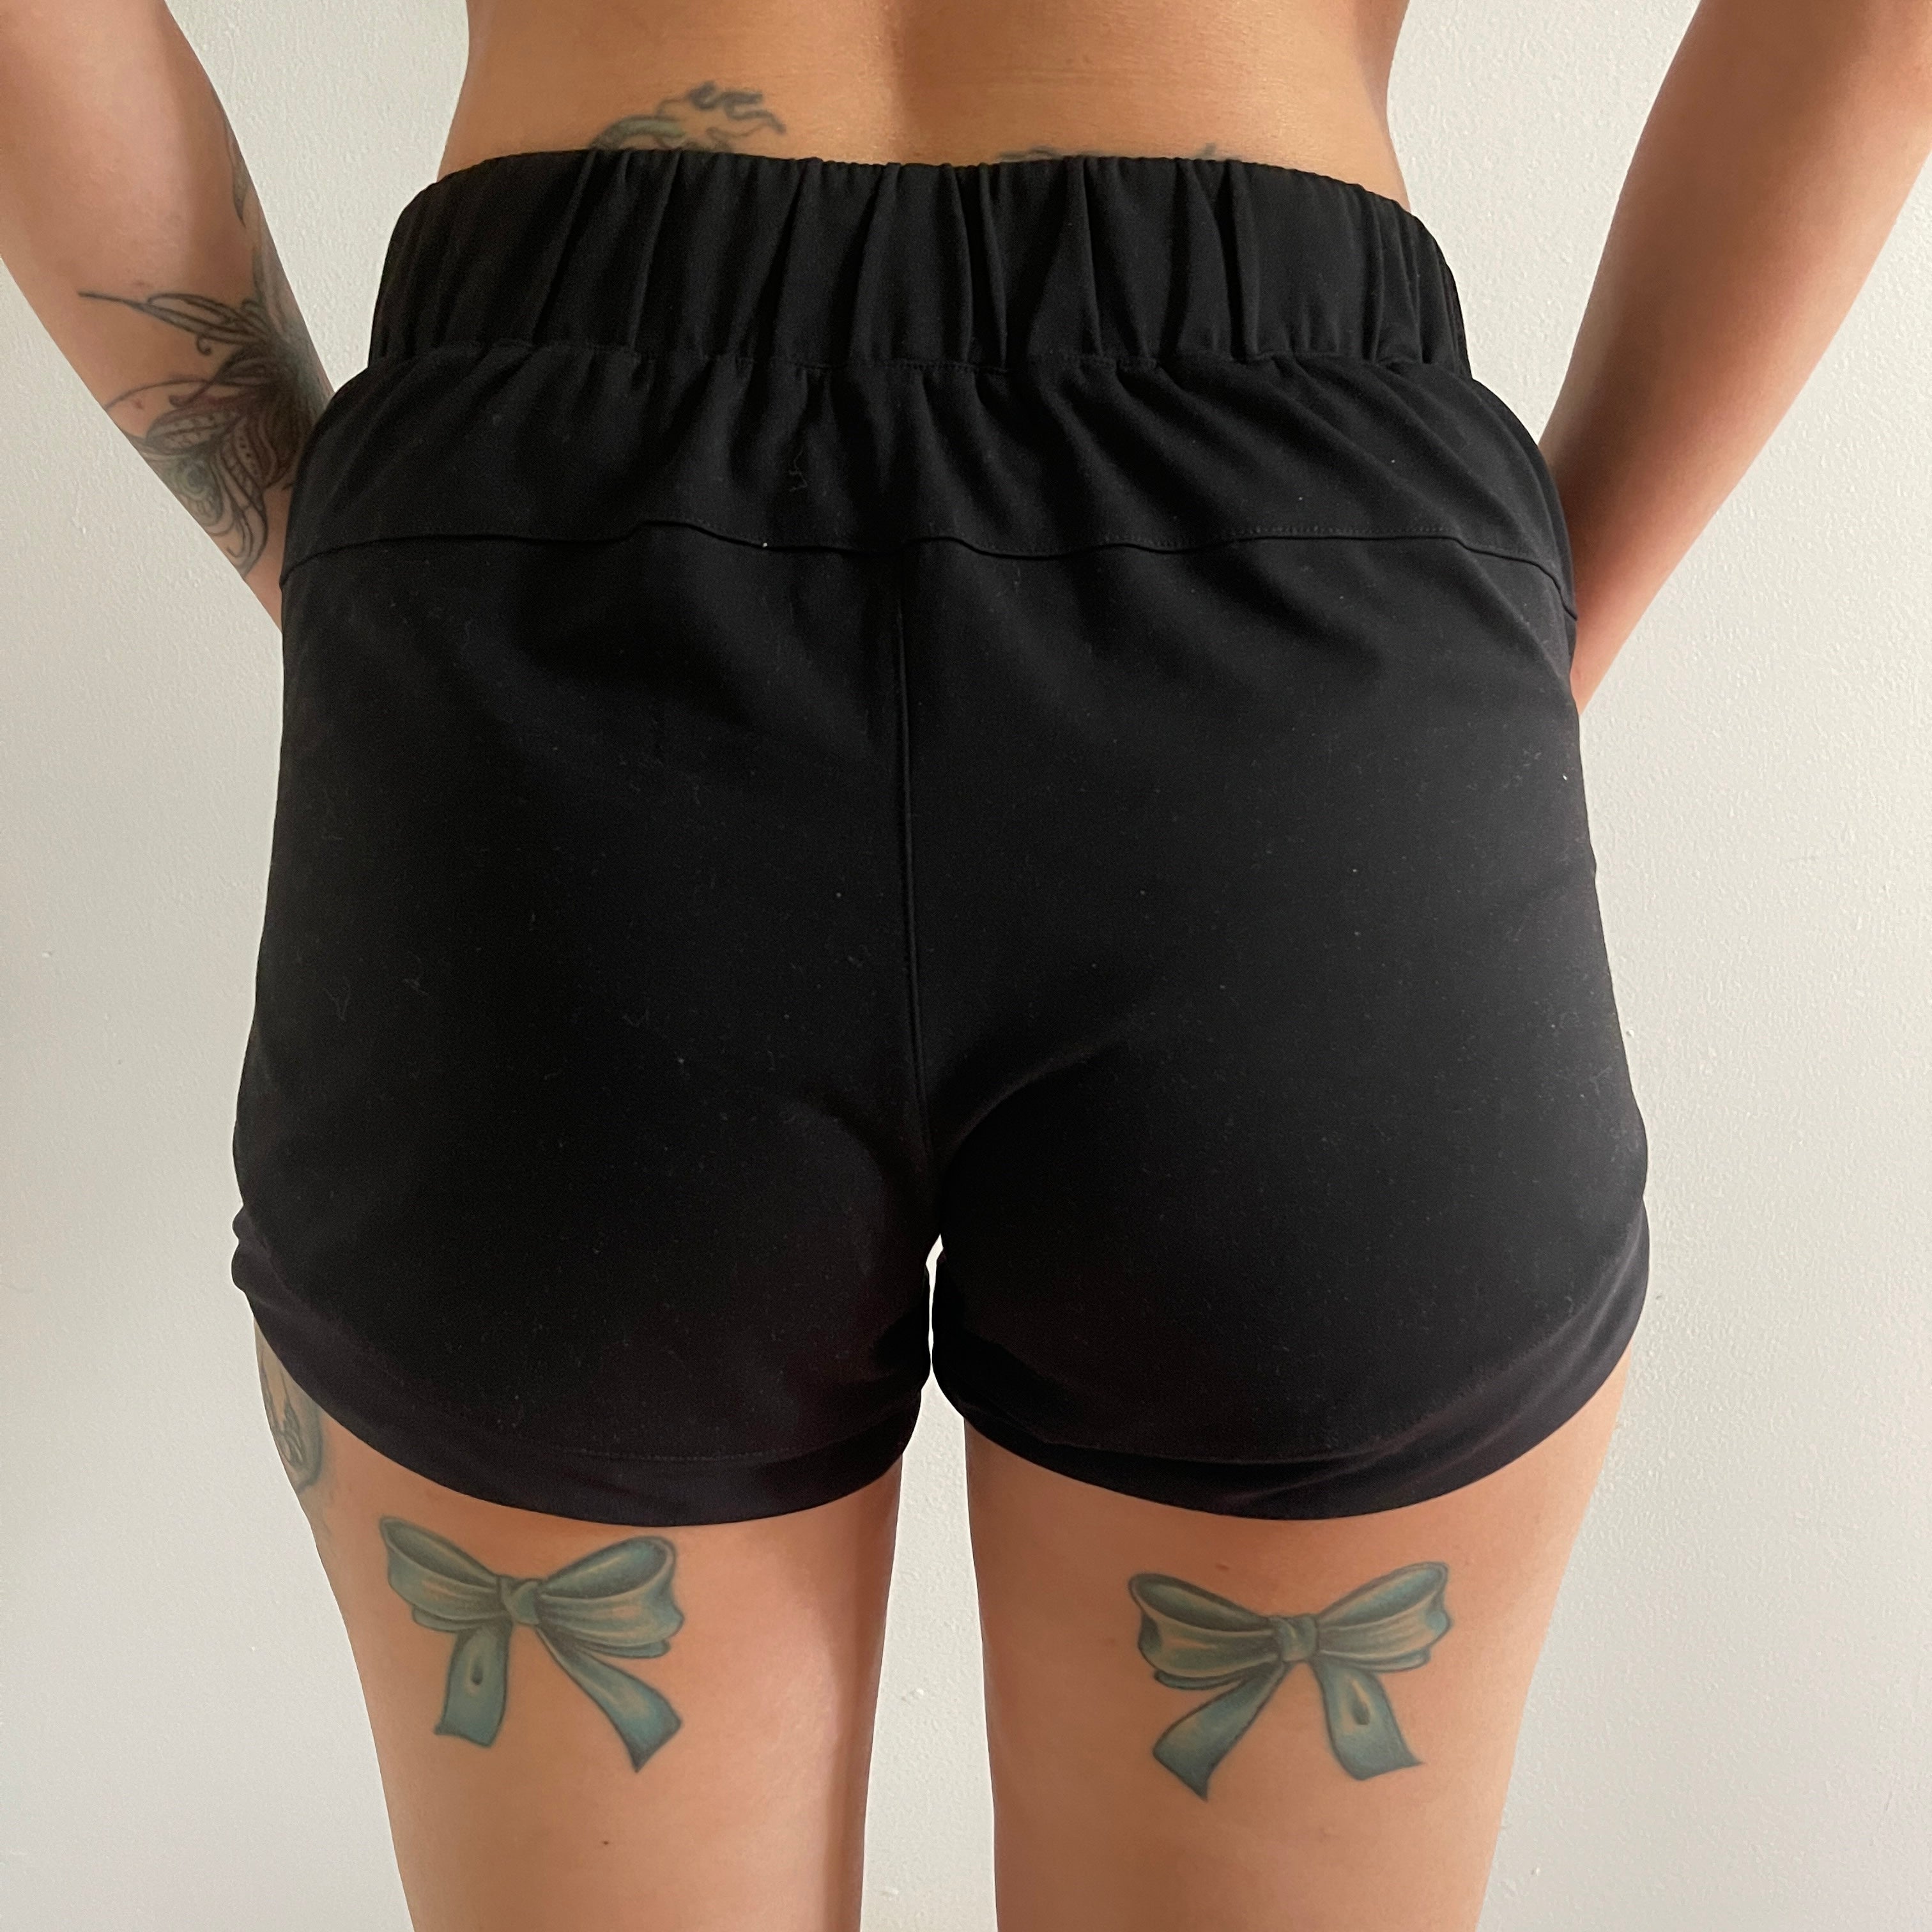 The Hera Shorts